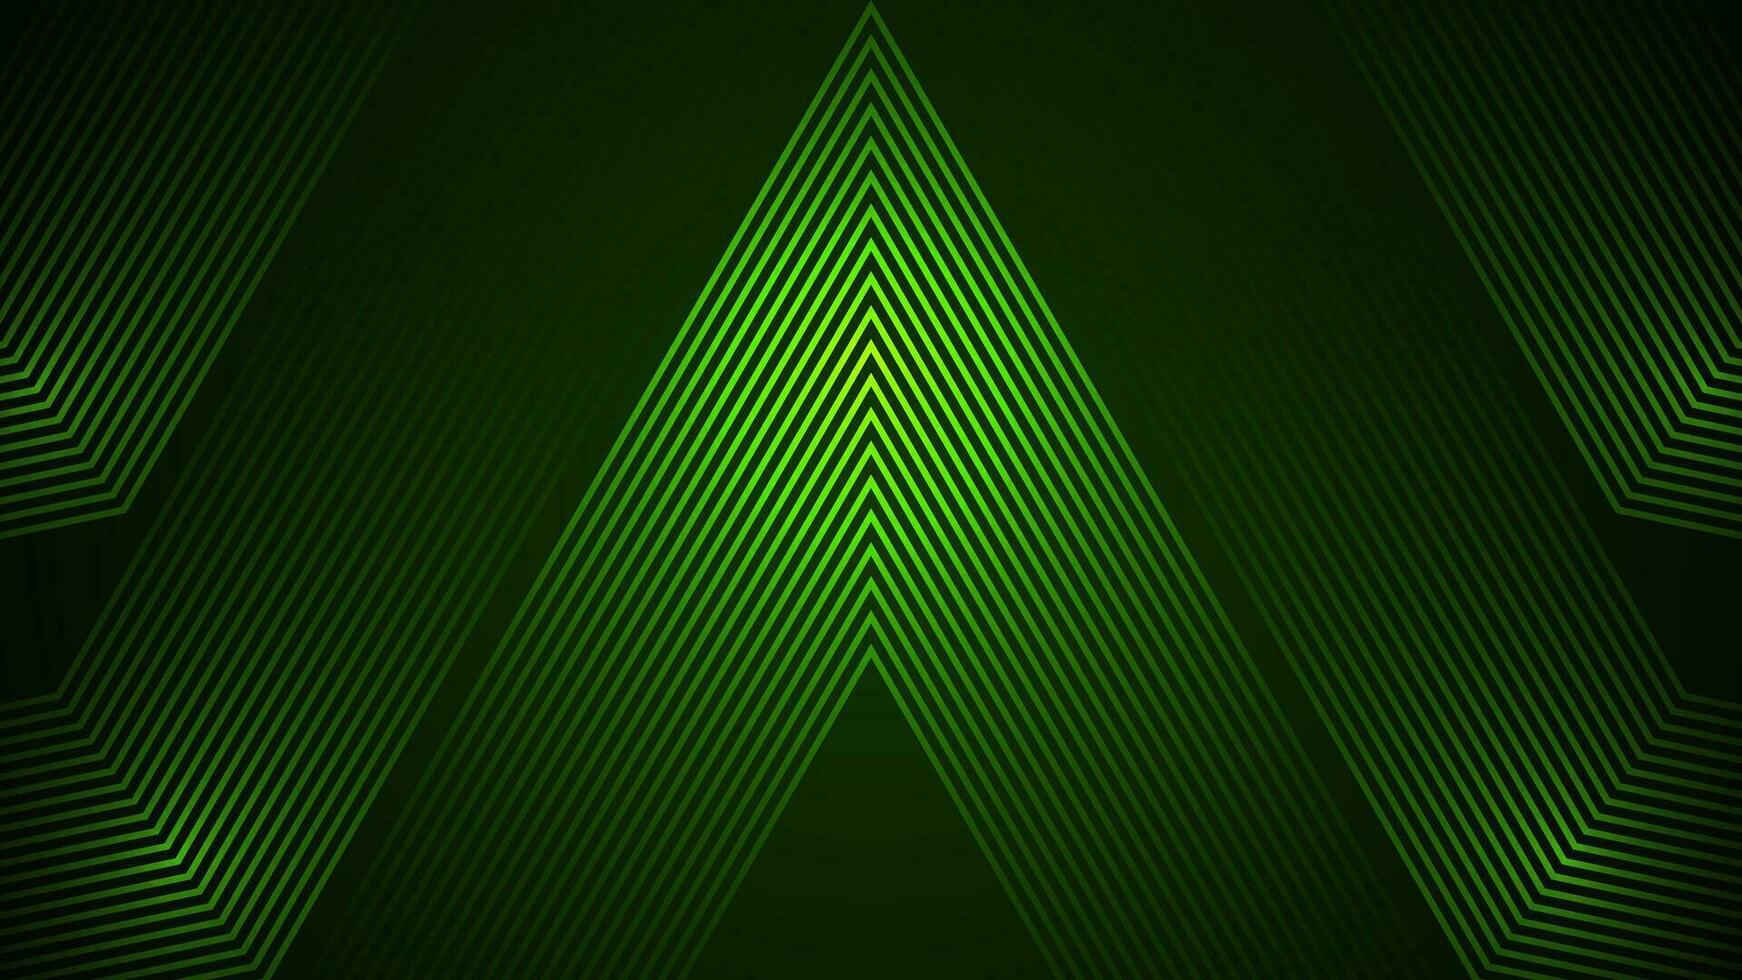 mörk grön enkel abstrakt bakgrund med rader i en geometrisk stil som de huvud element. vektor